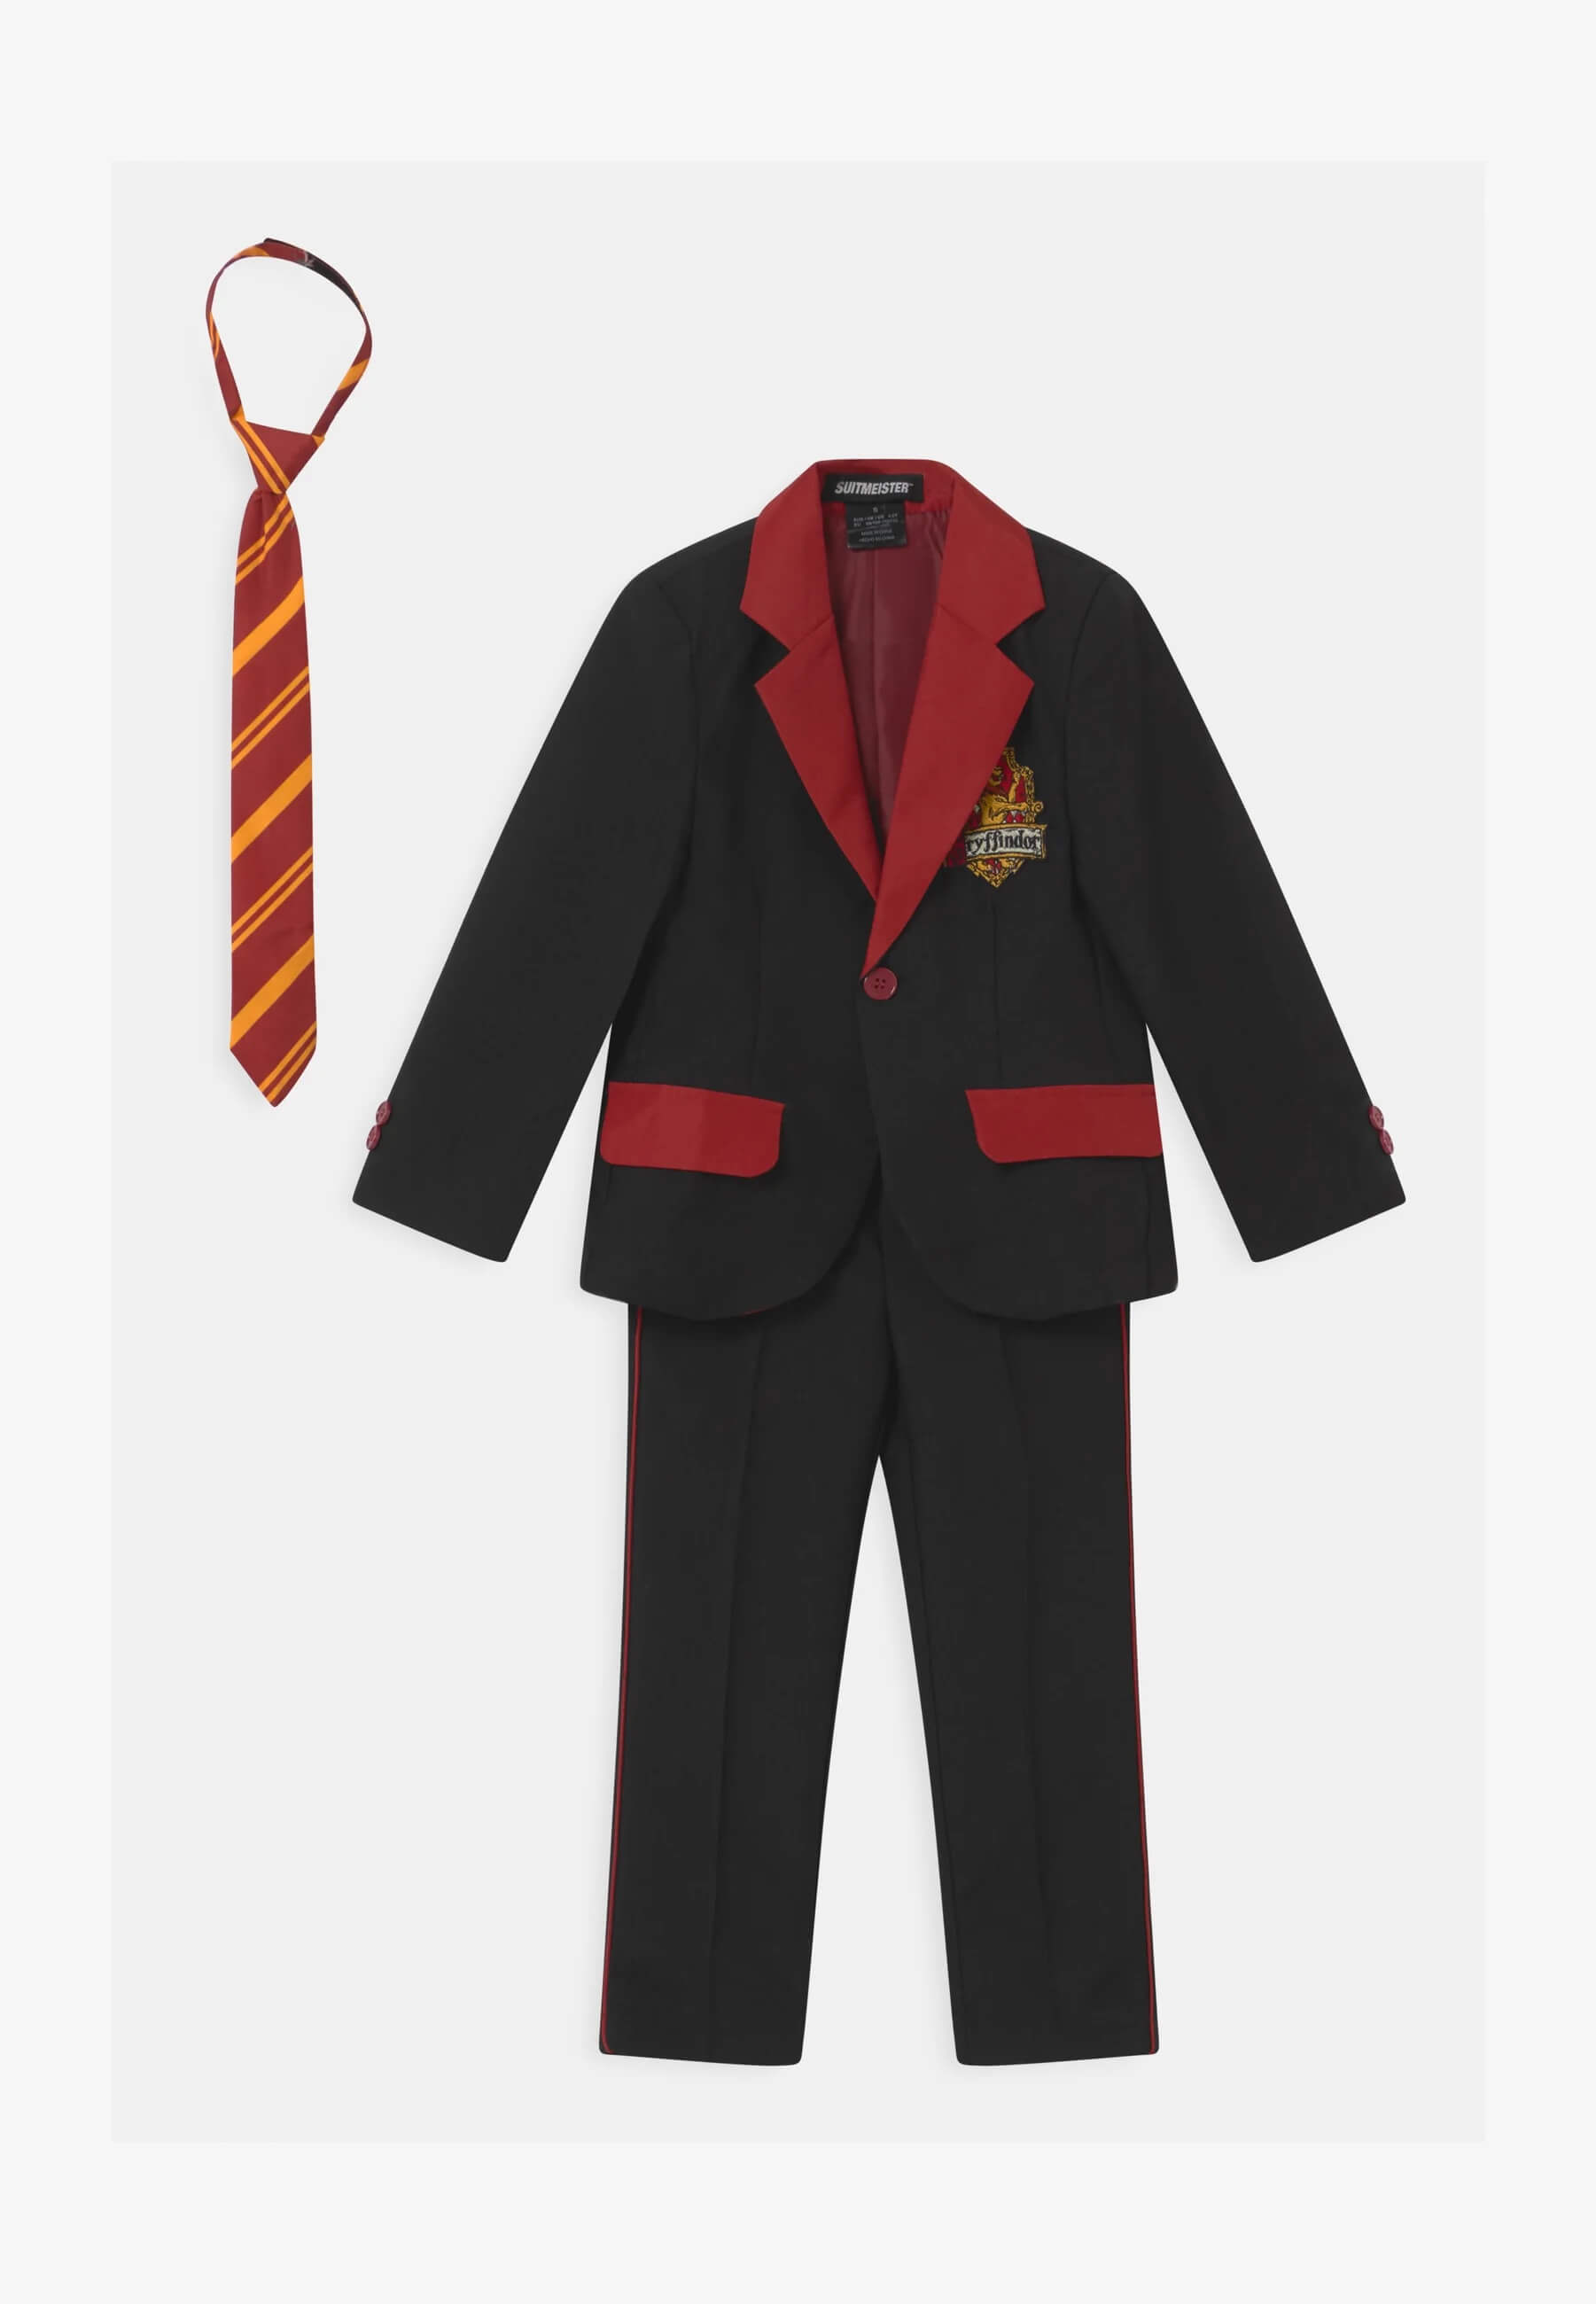 Кюстюм Suitmeister Harry Potter Gryffindor, черный/красный шарф старшекурсника факультета гриффиндор из истории гарри поттера